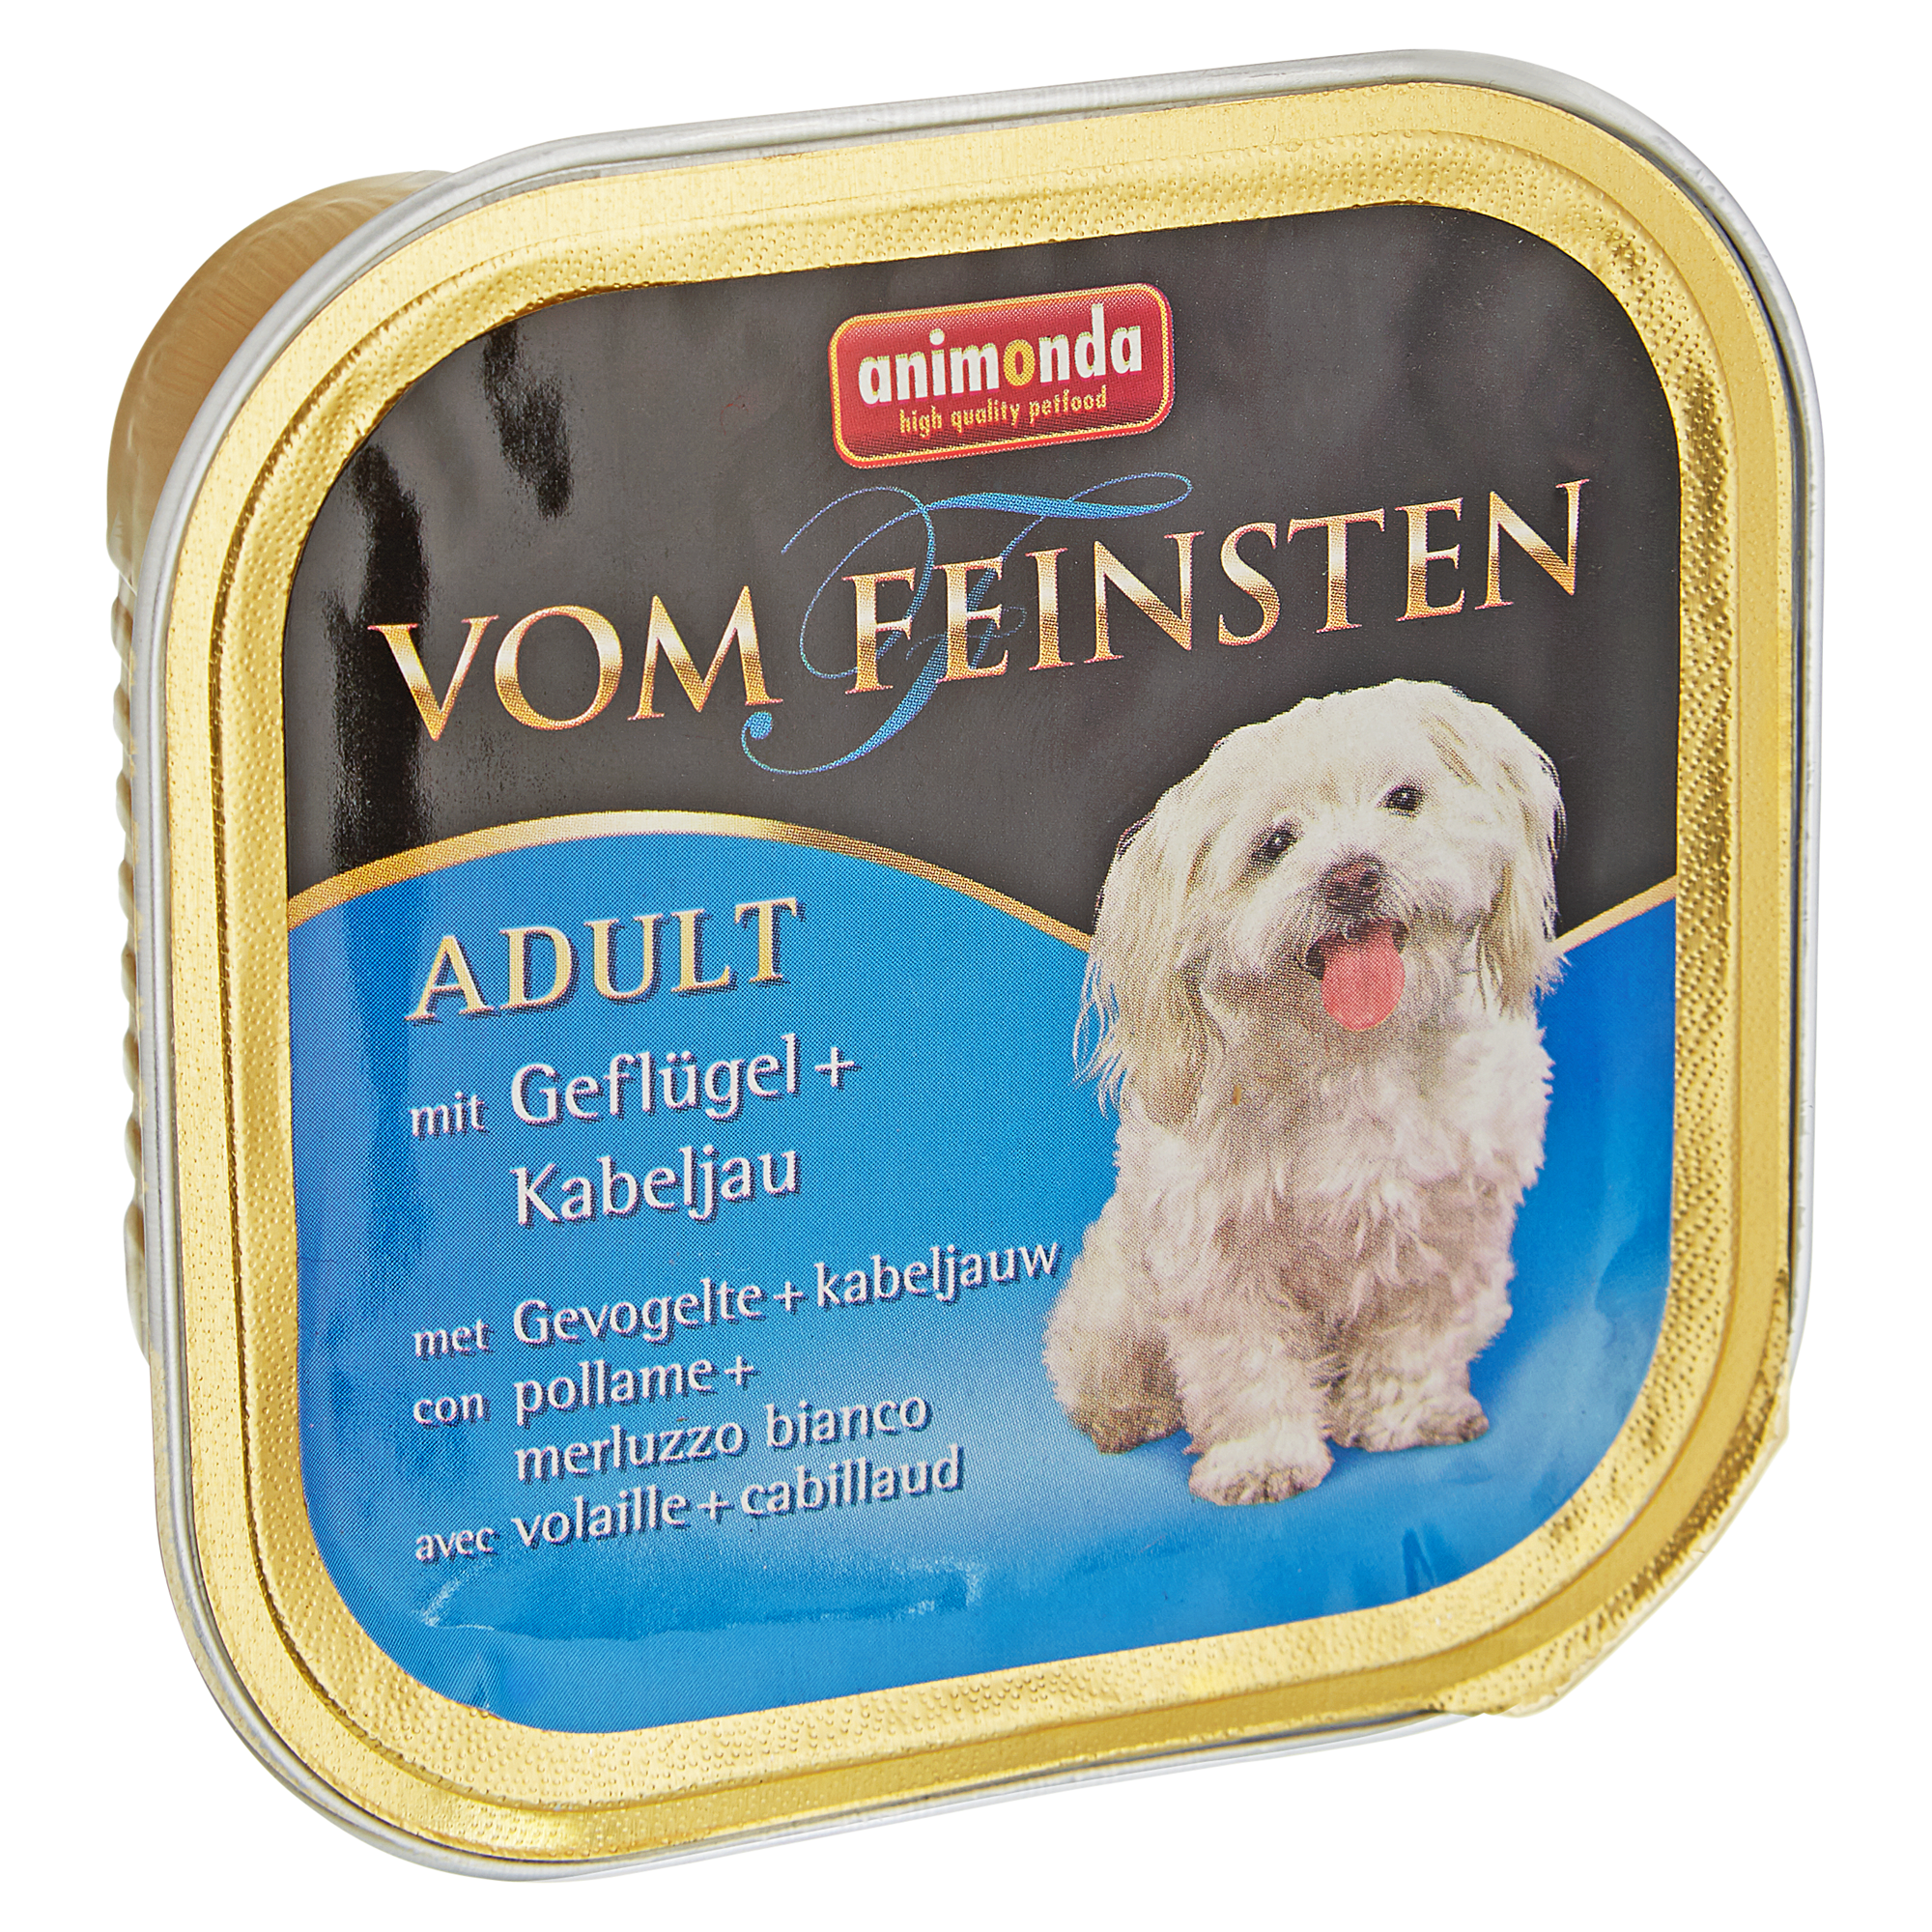 Hundenassfutter "Vom Feinsten" Adult mit Geflügel und Kabeljau 150 g + product picture